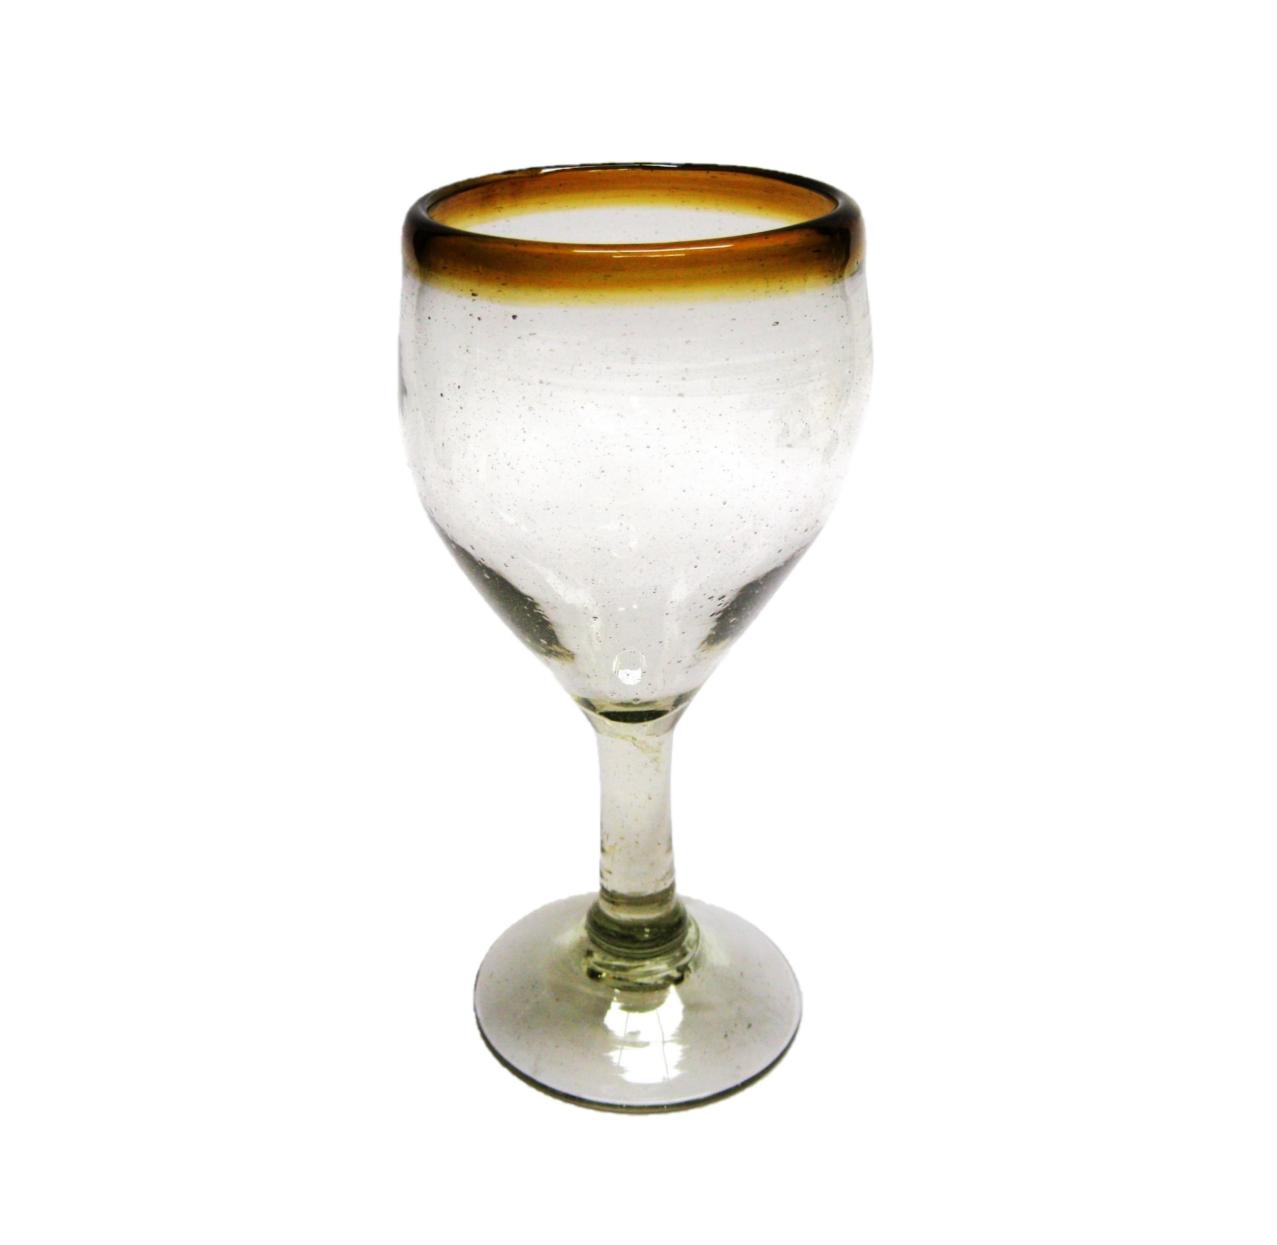 Colored Rim Glassware / Amber Rim 7 oz Small Wine Glasses (set of 6) / Capture the bouquet of fine red wine with these wine glasses bordered with a bright, amber color rim.